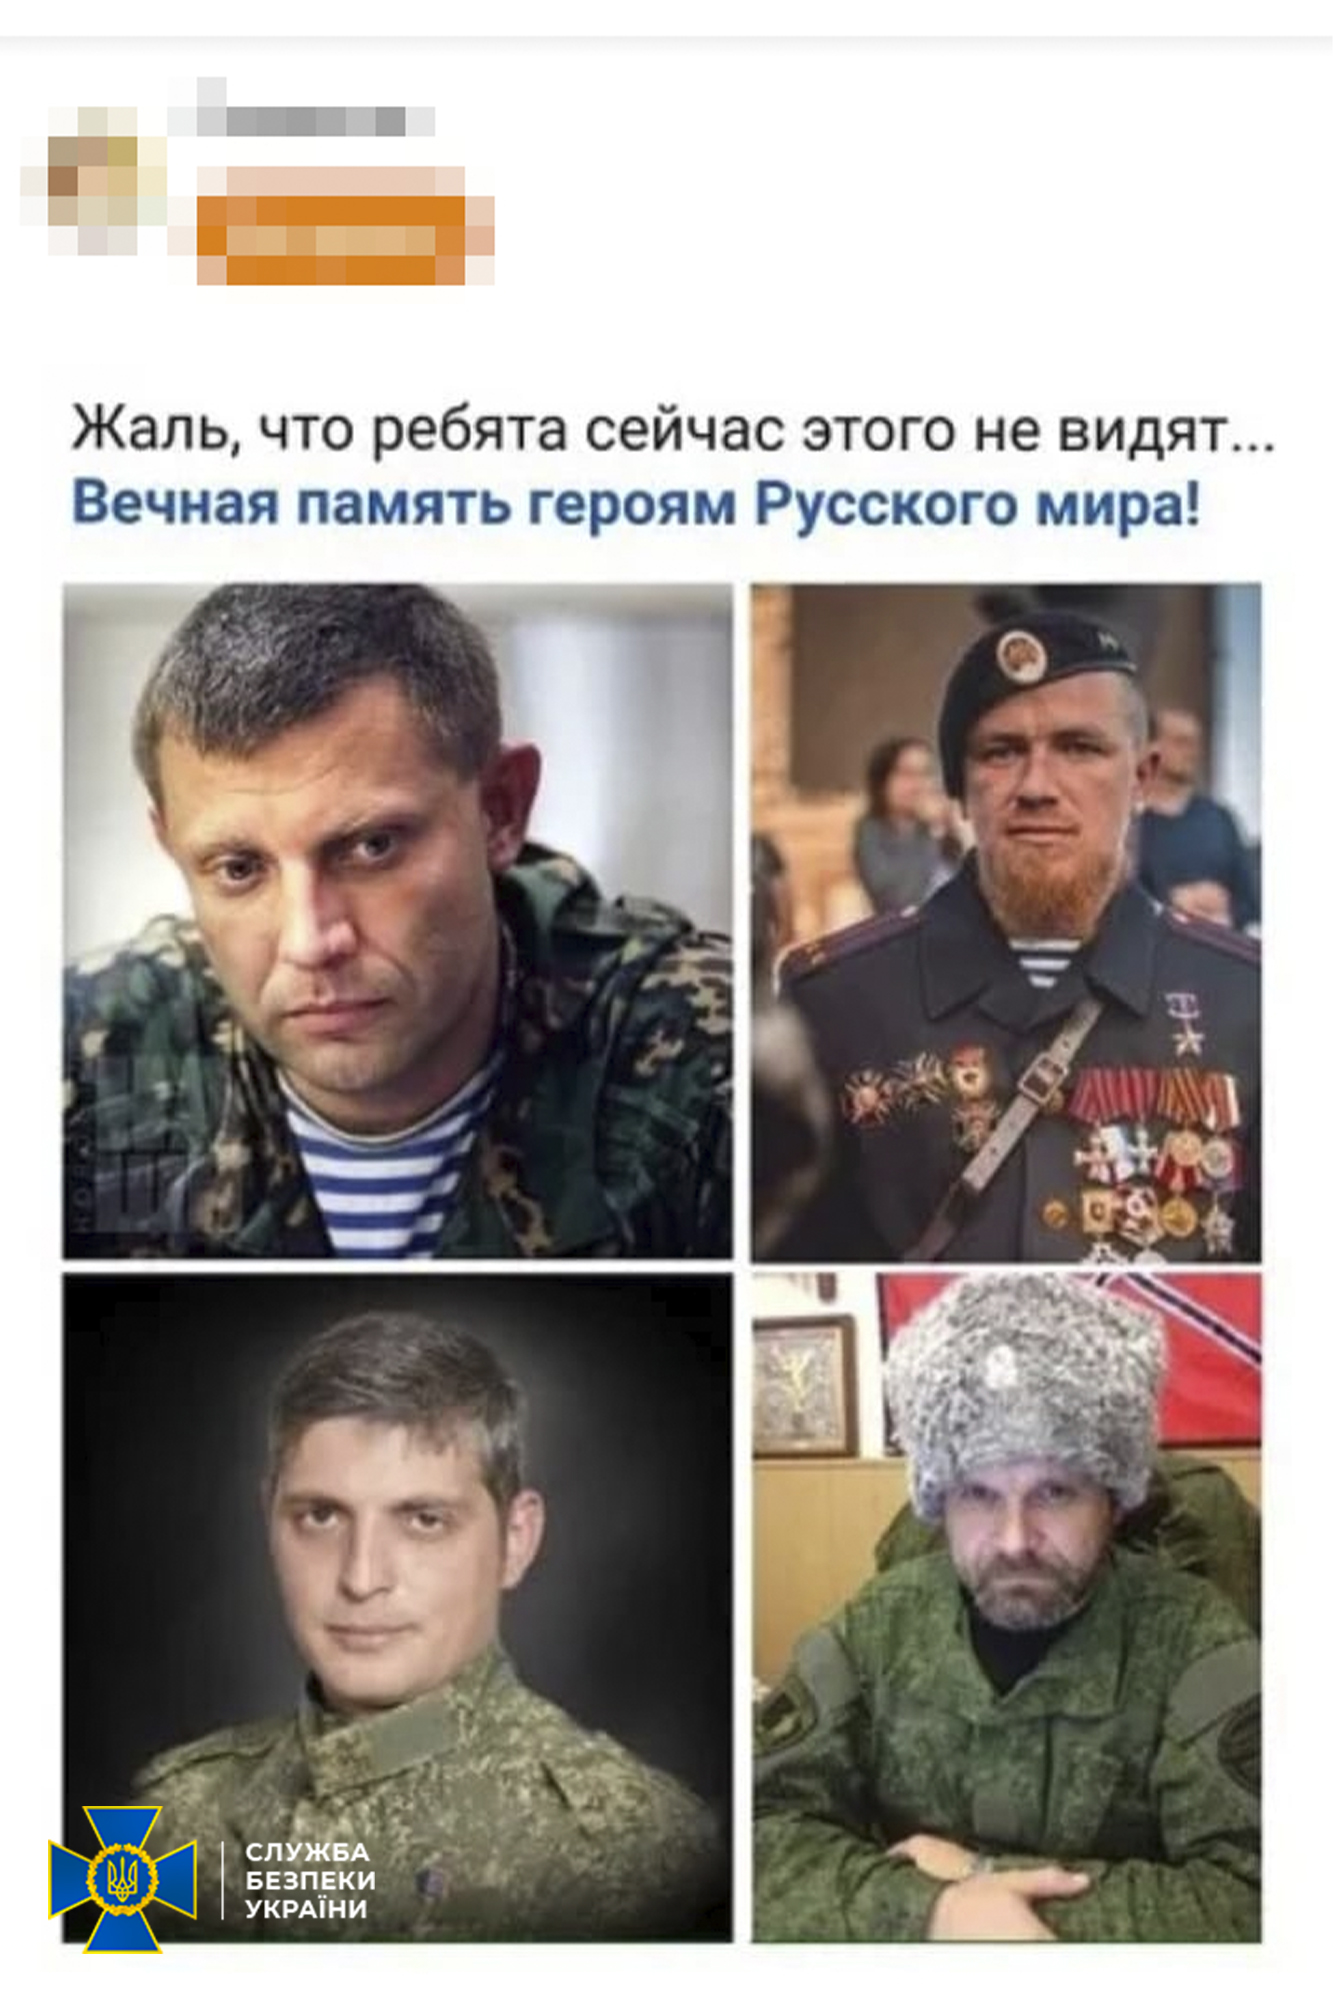 Мужчины поддерживали кафиров - || фото: facebook.com/ssu.dnipro